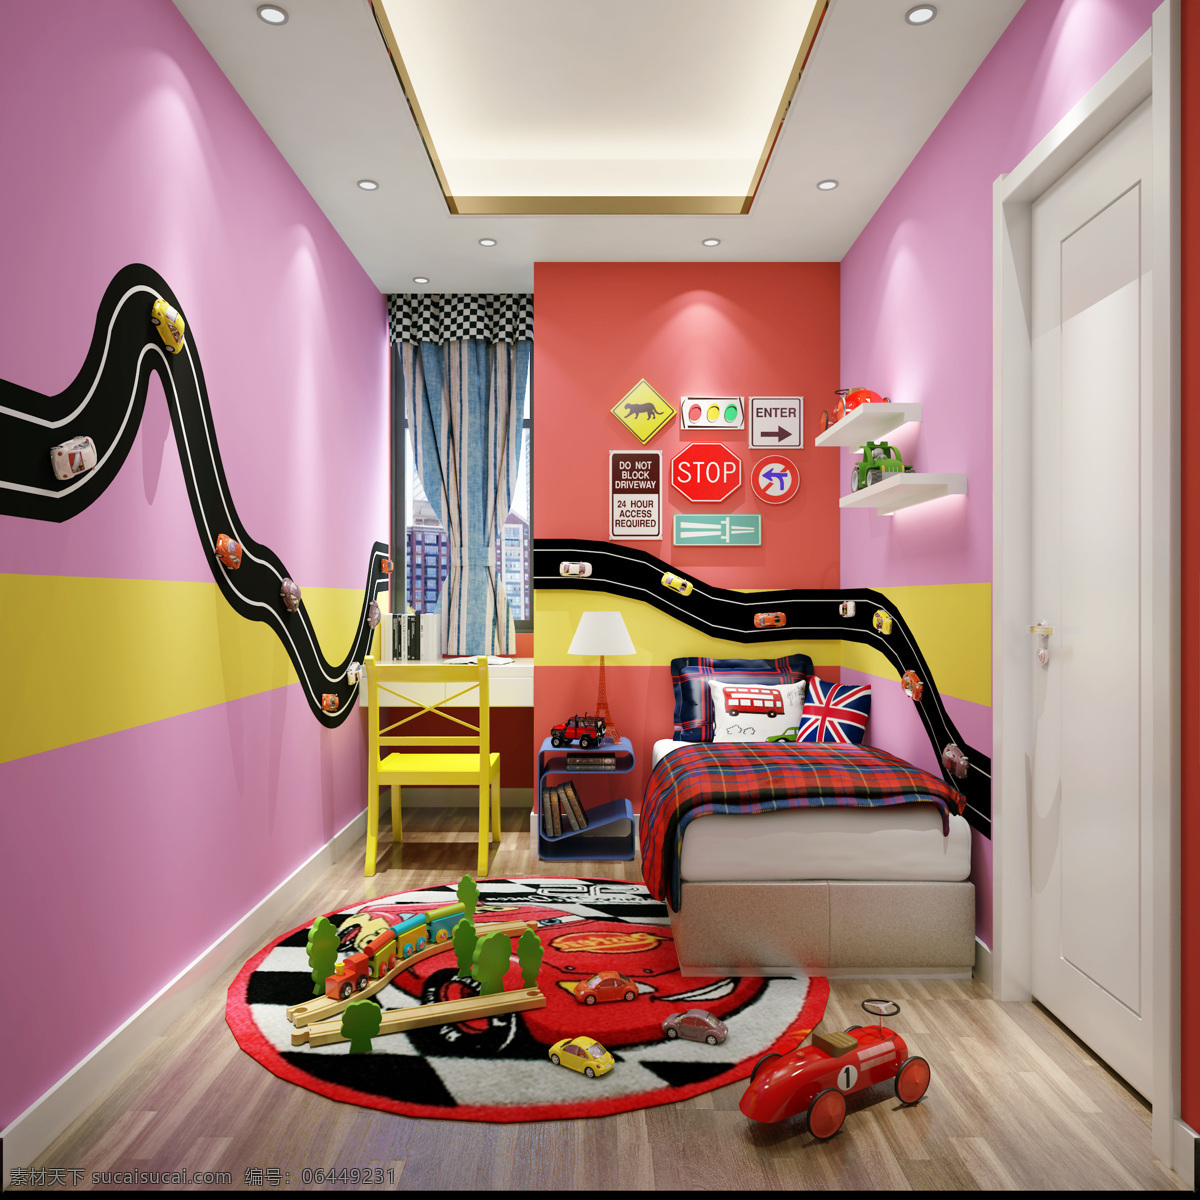 粉色 儿童 卧室 简约 效果图 粉色软装 贵族设计 室内 家居设计 室内设计 现代简约 家装 装修 设计效果图 别墅